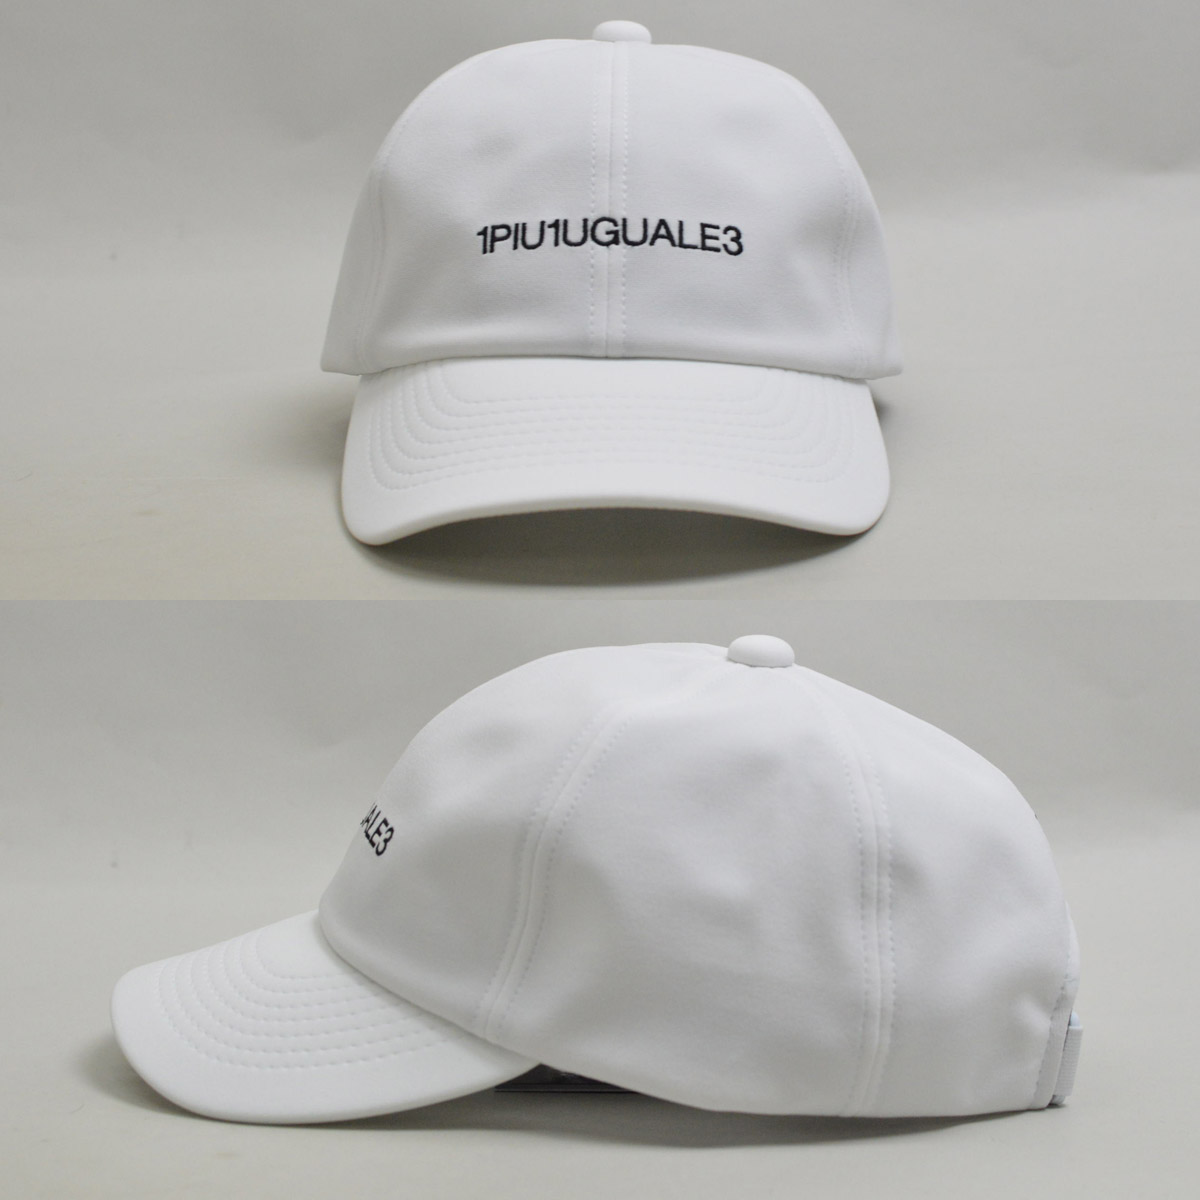 1PIU1UGUALE3 GOLF キャップ帽子 ウノピゥウノウグァーレトレ ゴルフ